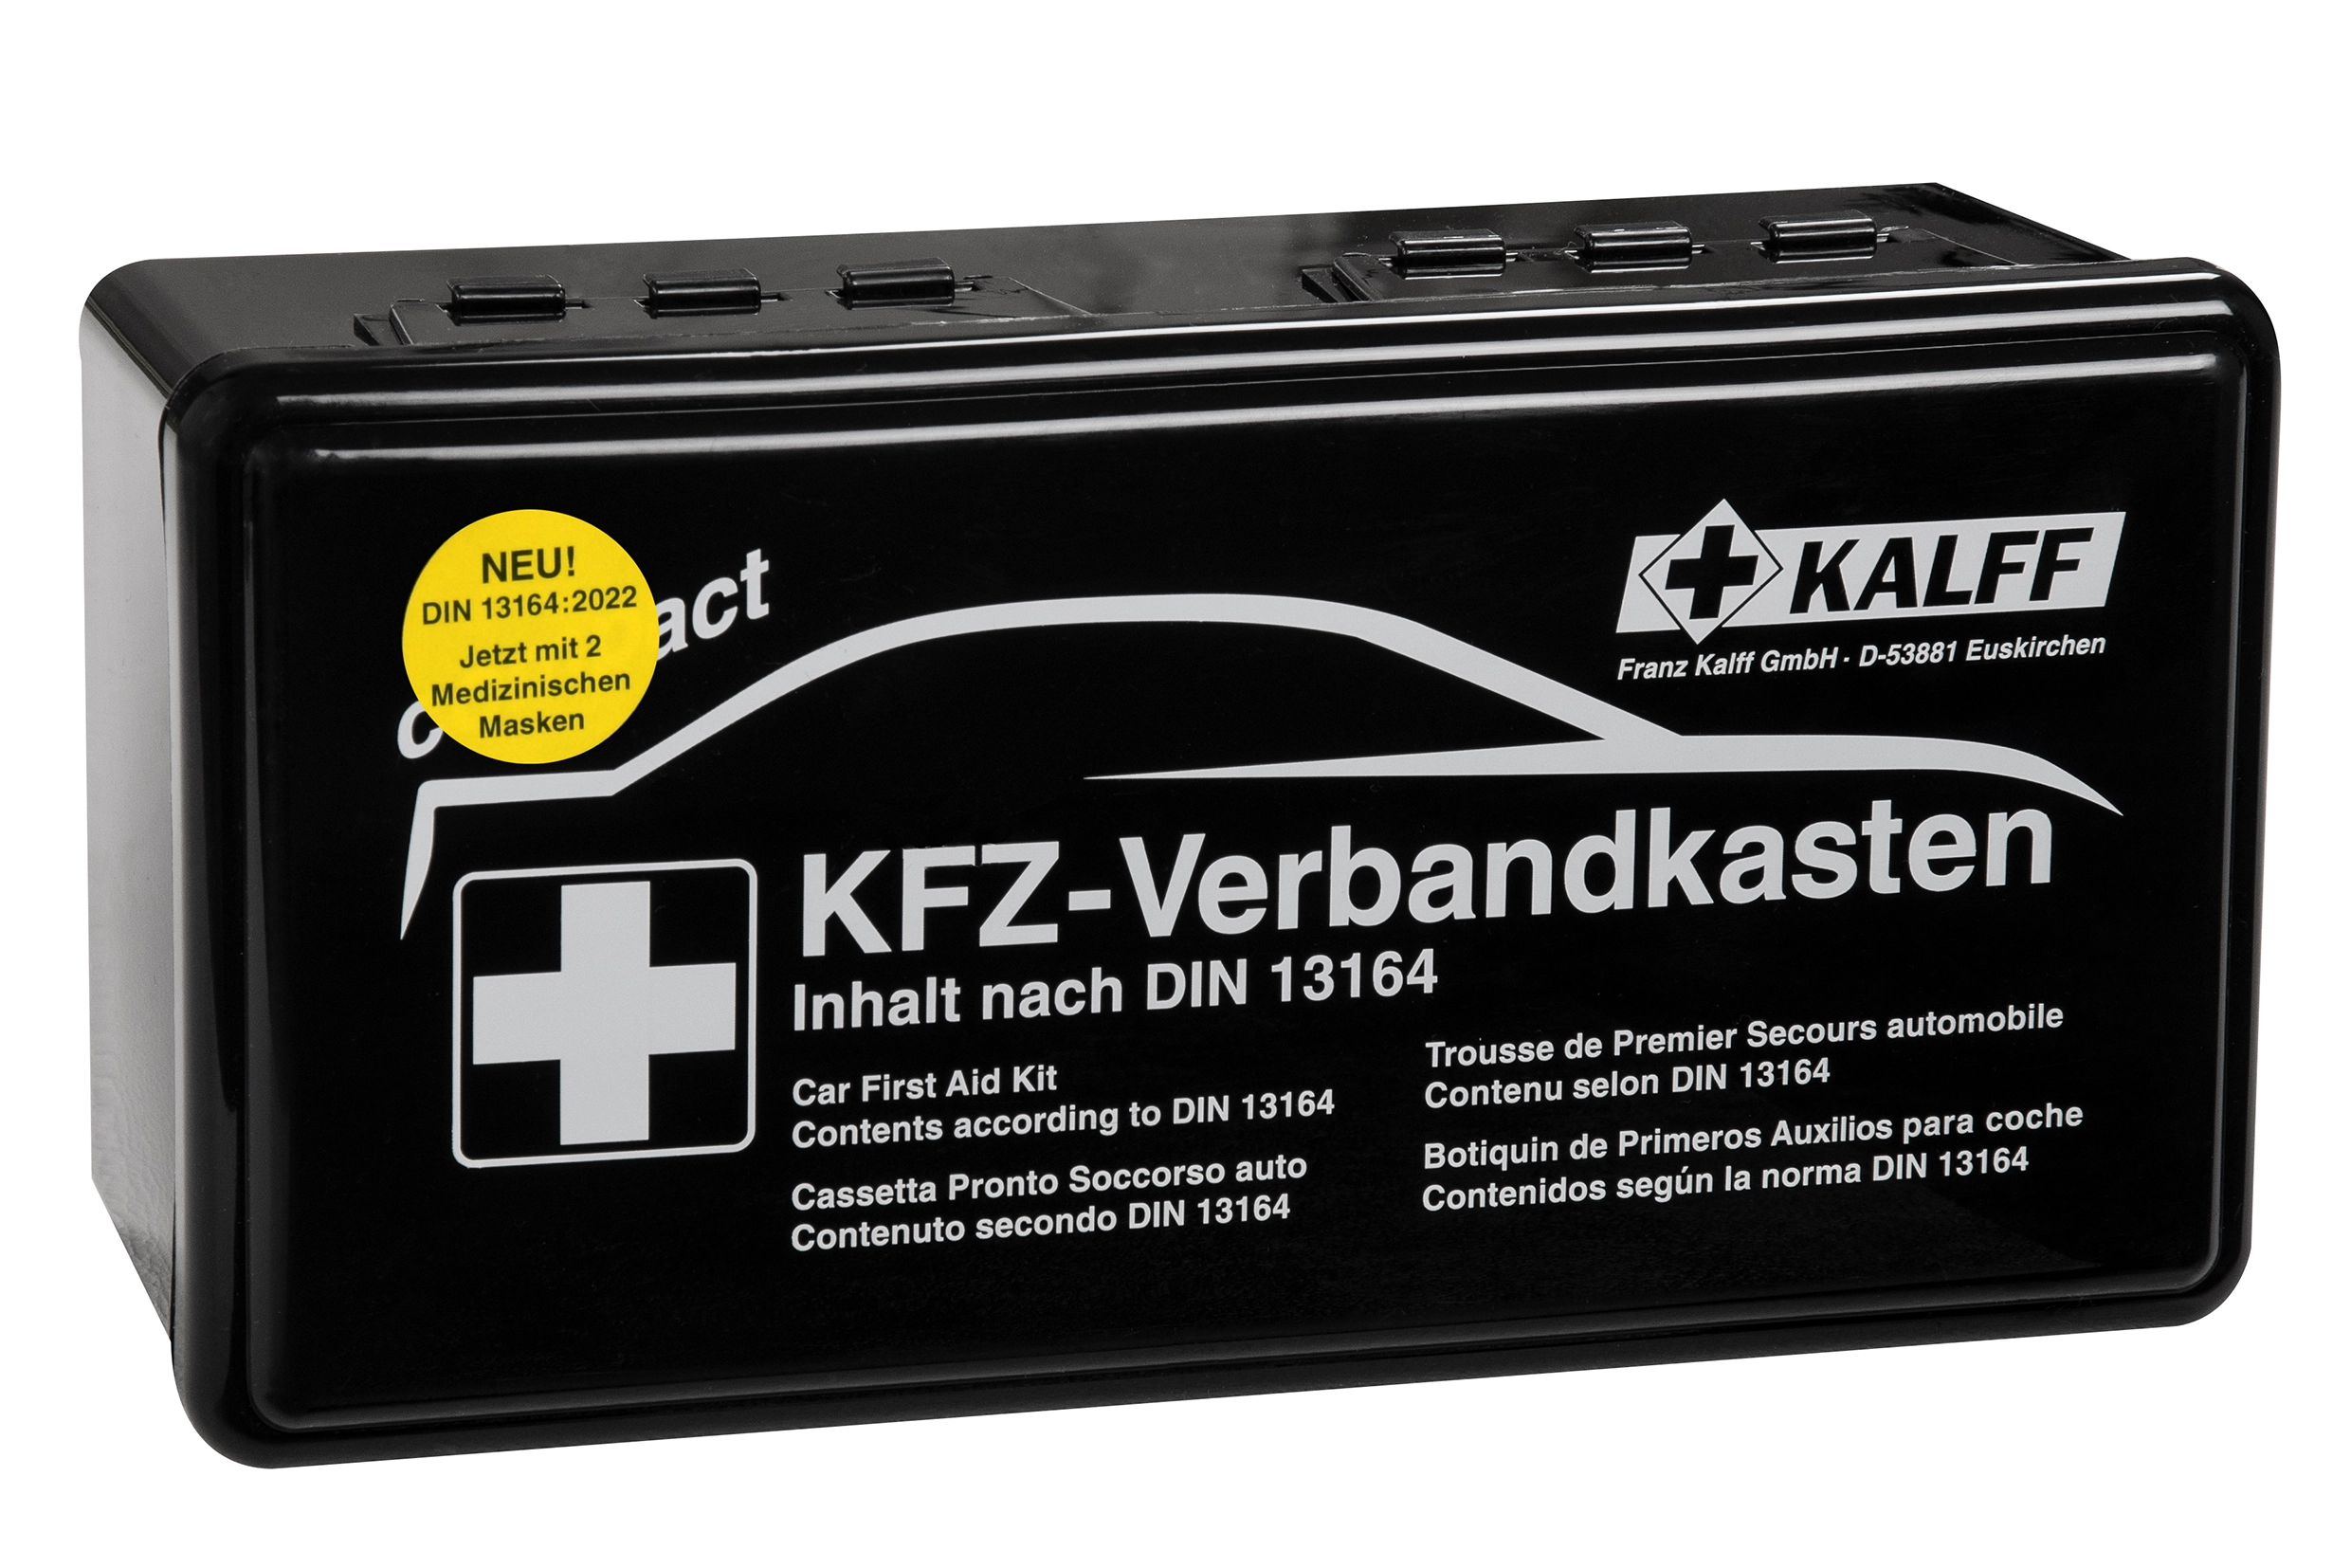 Kfz-Verbandskasten DIN 13164 in Profi-Qualität